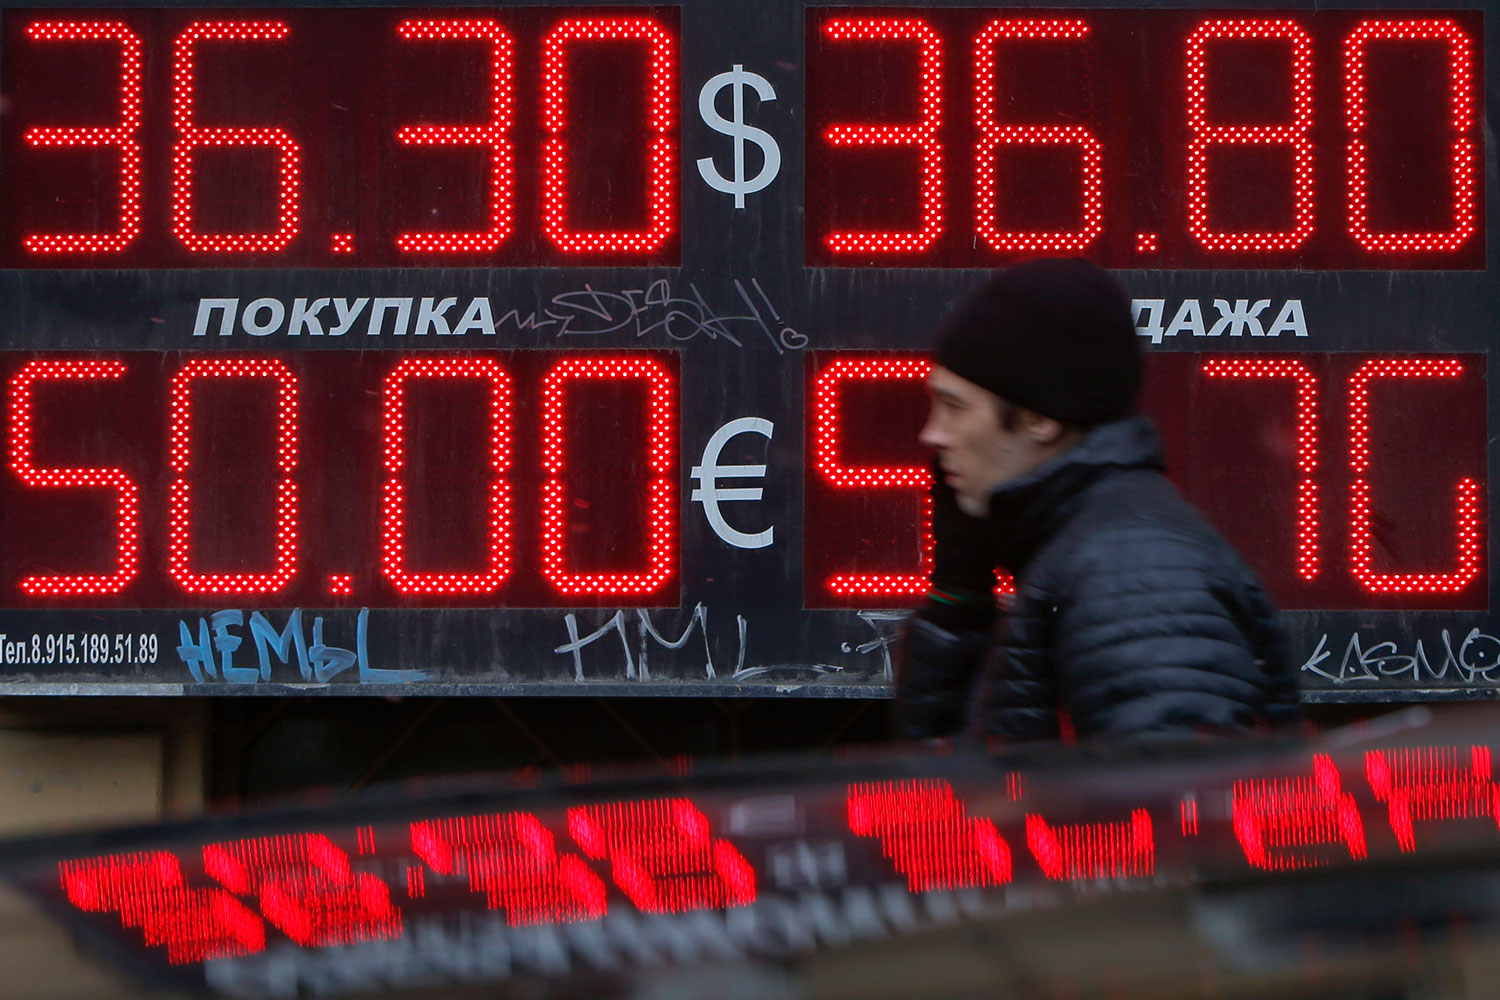 El rublo se desplome en Bolsa ante la tensión por la intervención militar en Crimea